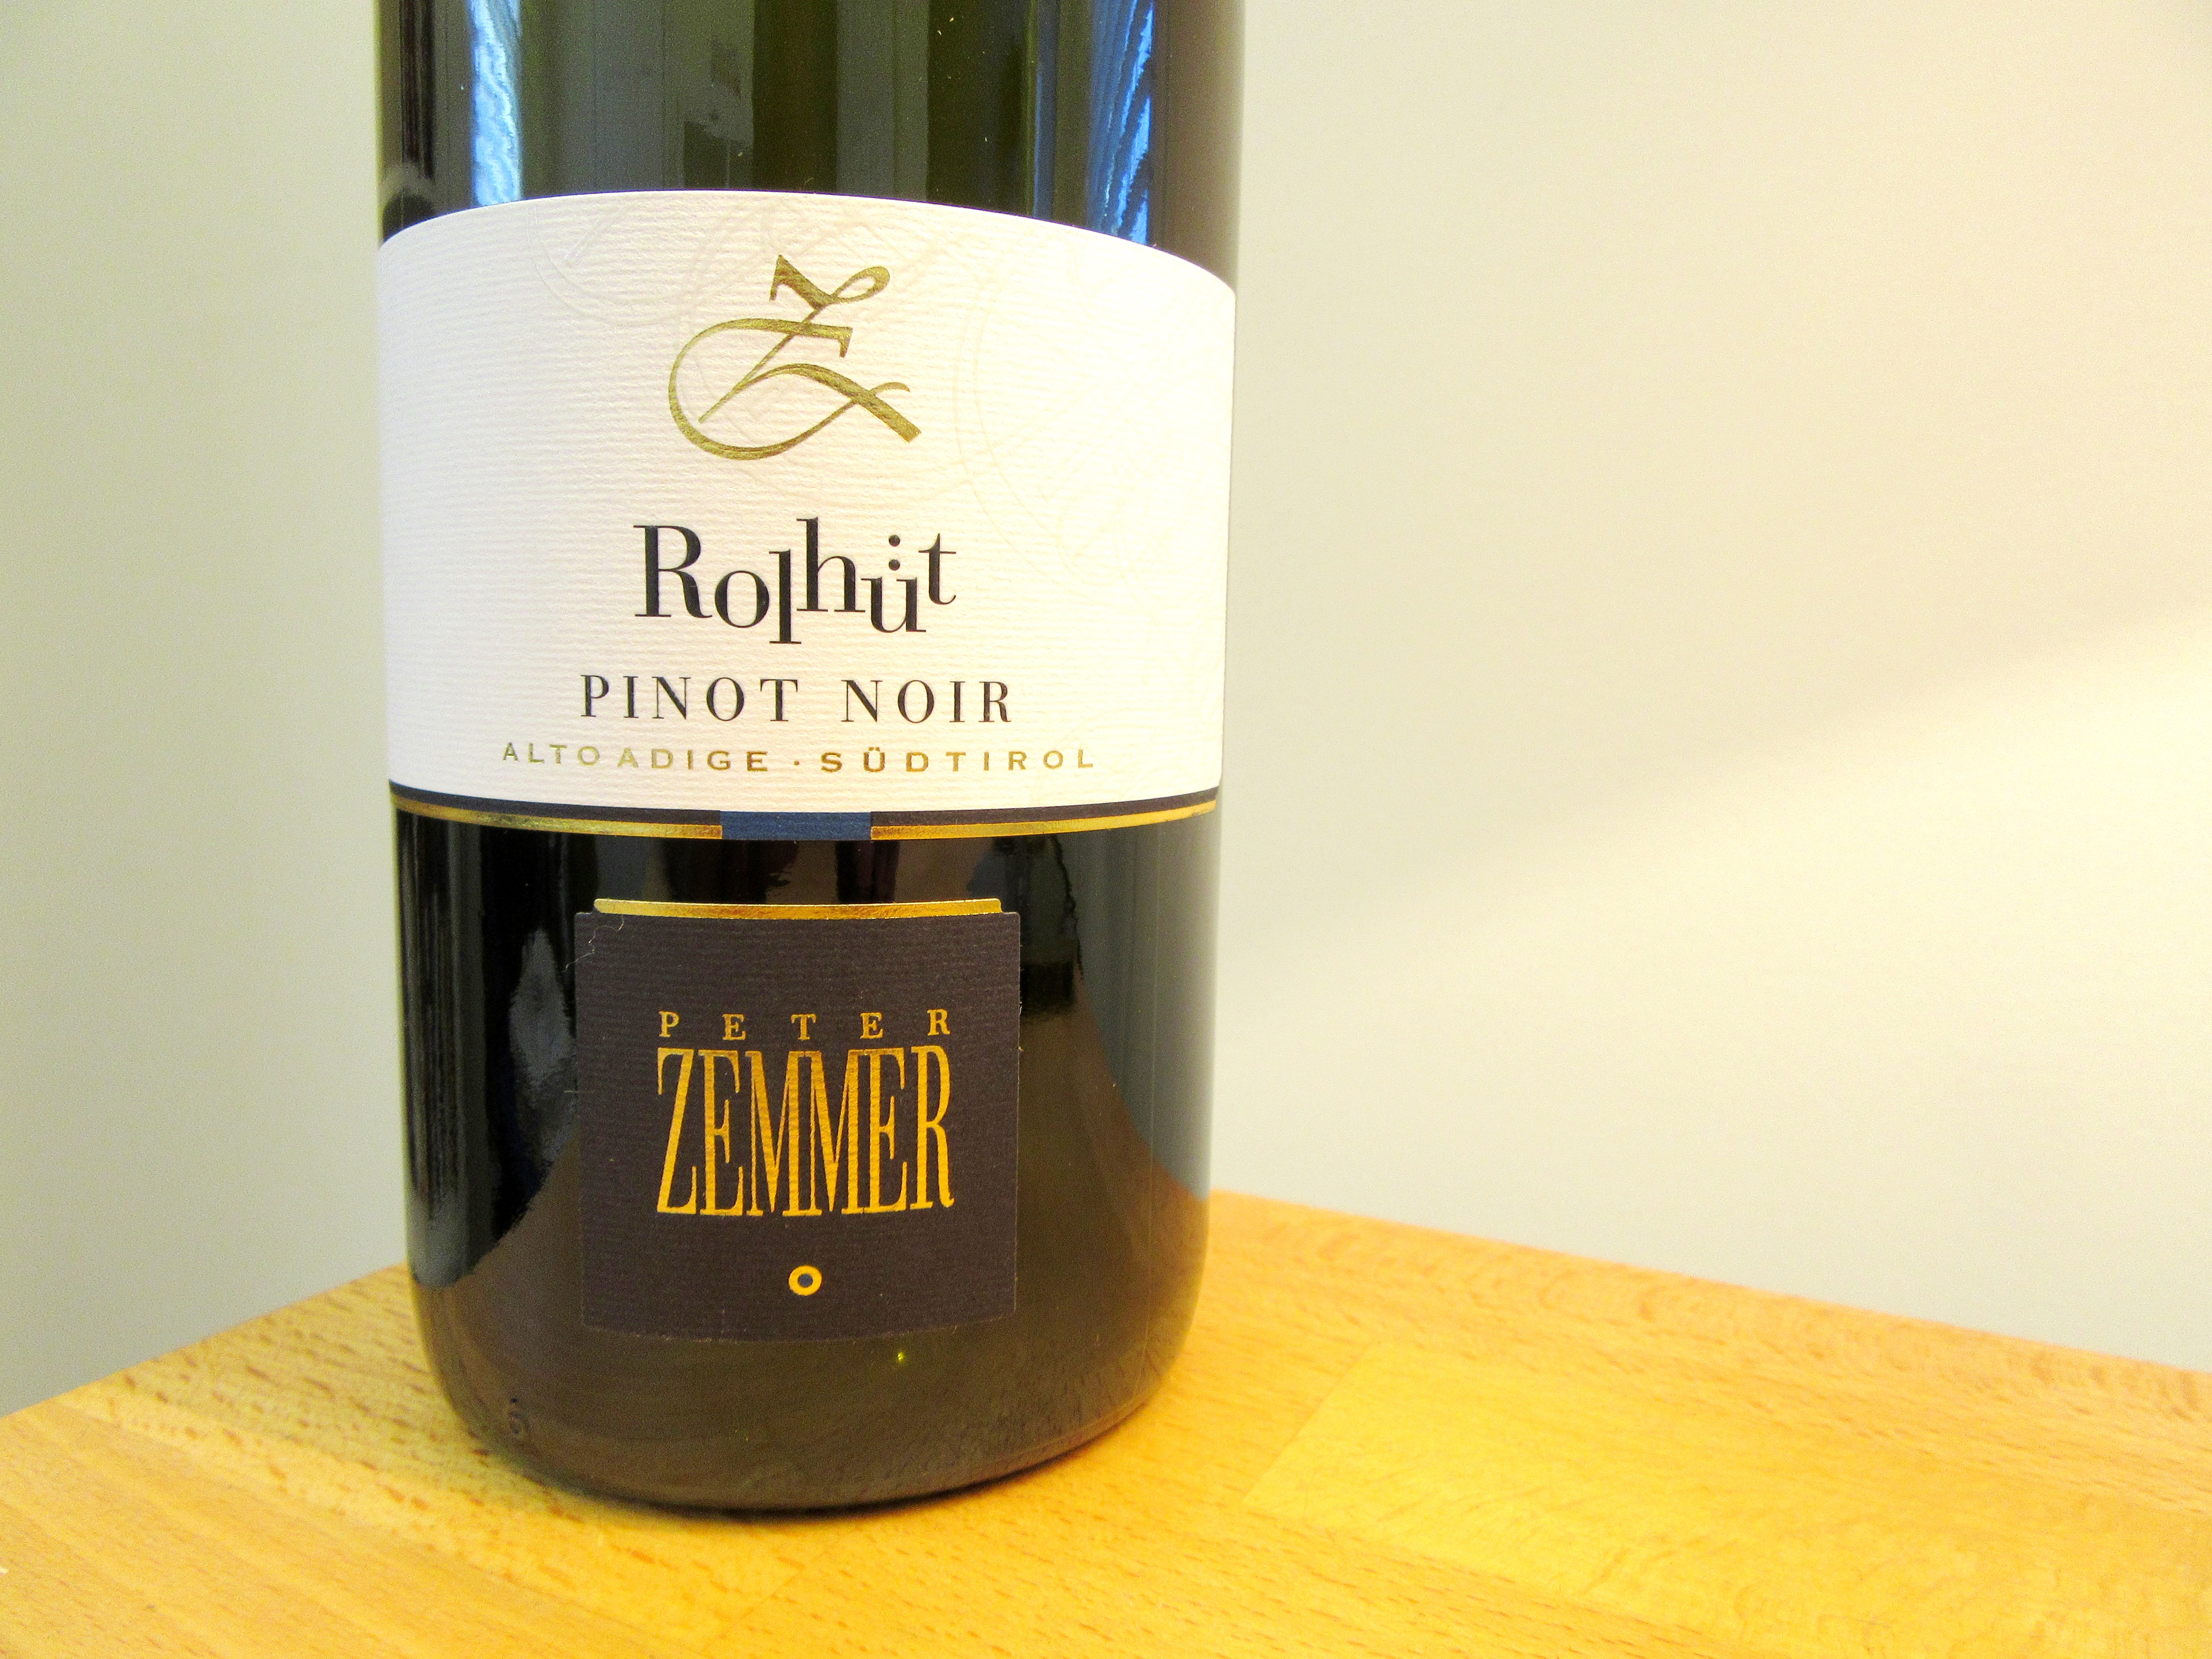 Peter Zemmer, Rollhütt Pinot Noir 2015, Alto Adige - Süditrol, Italy, Wine Casual